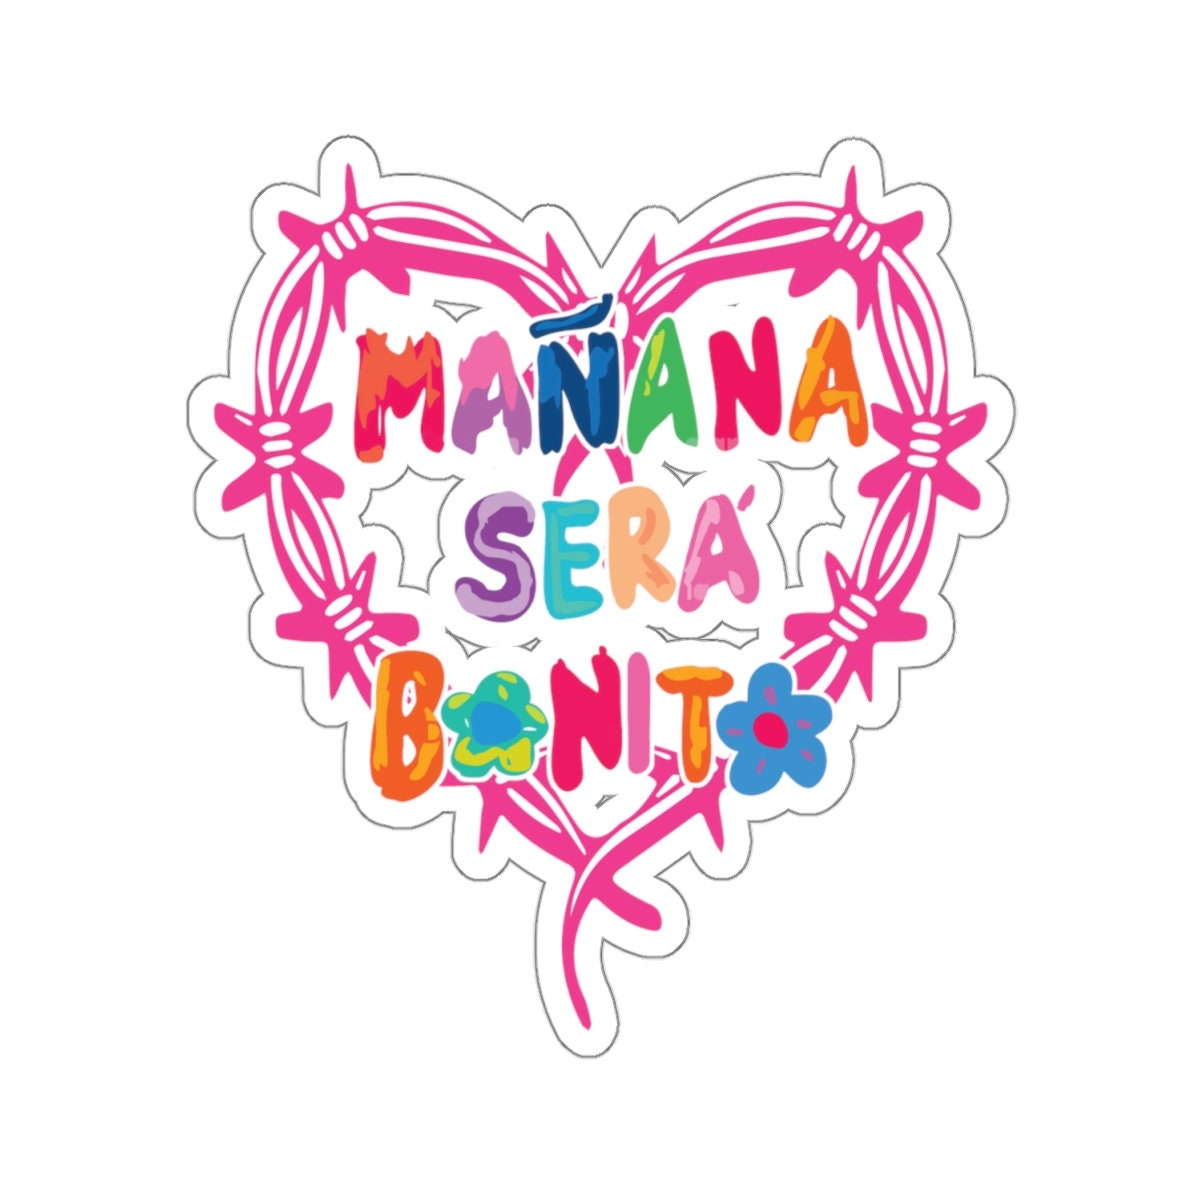 Manana Sera Bonito Merch 52PCS Manana Sera Bonito Stickers Karol G